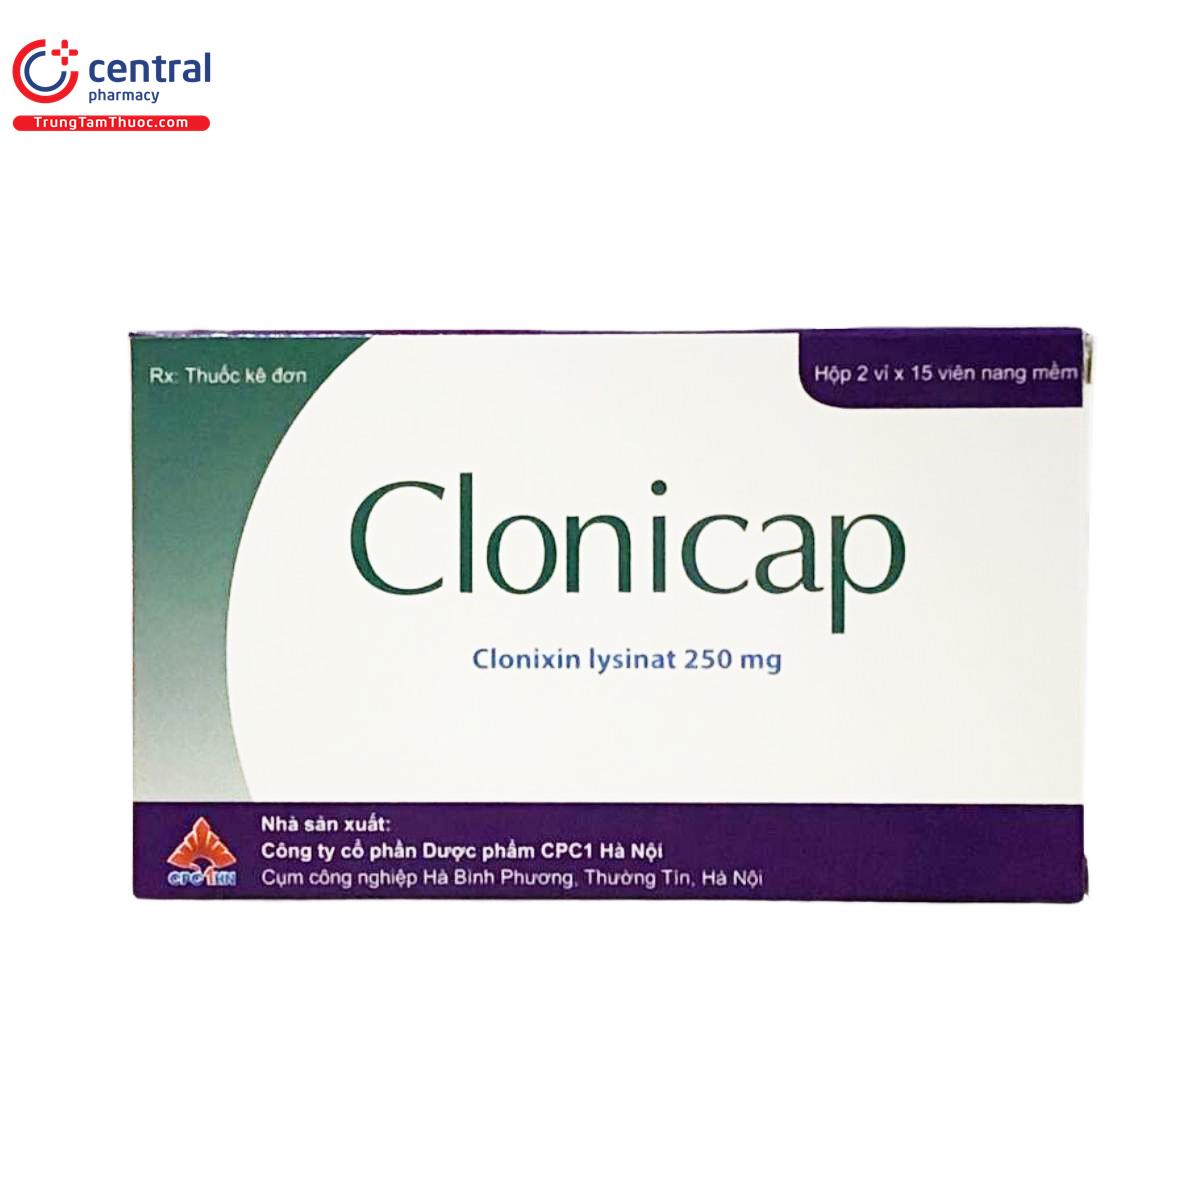 clonicap 3 L4184